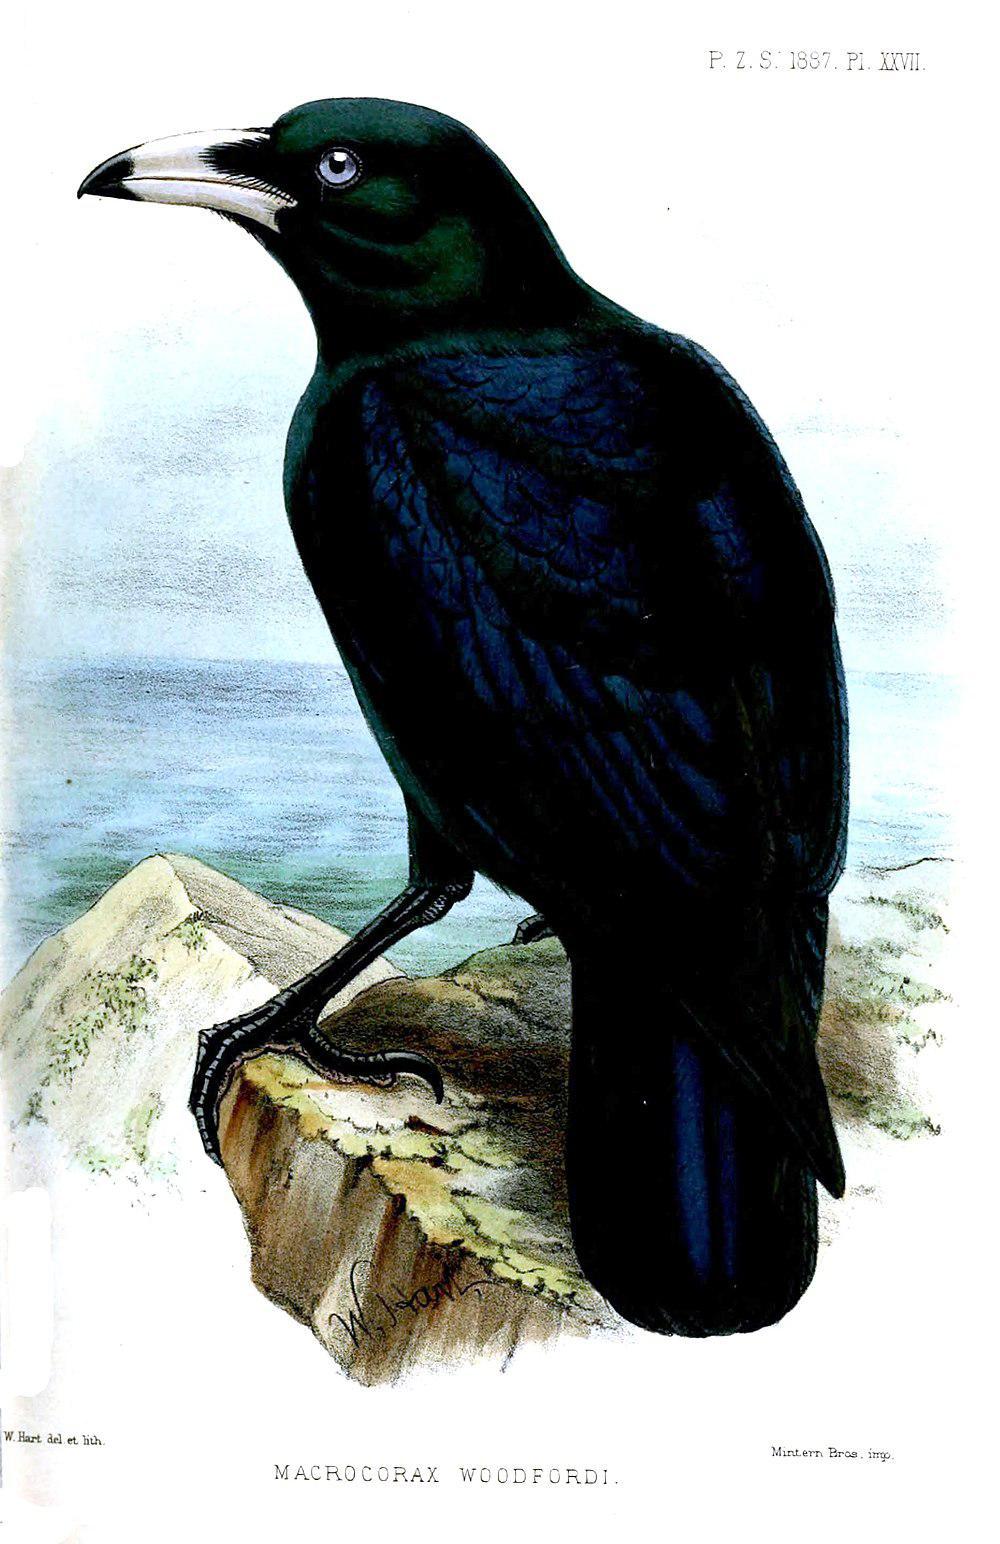 白嘴乌鸦 / White-billed Crow / Corvus woodfordi